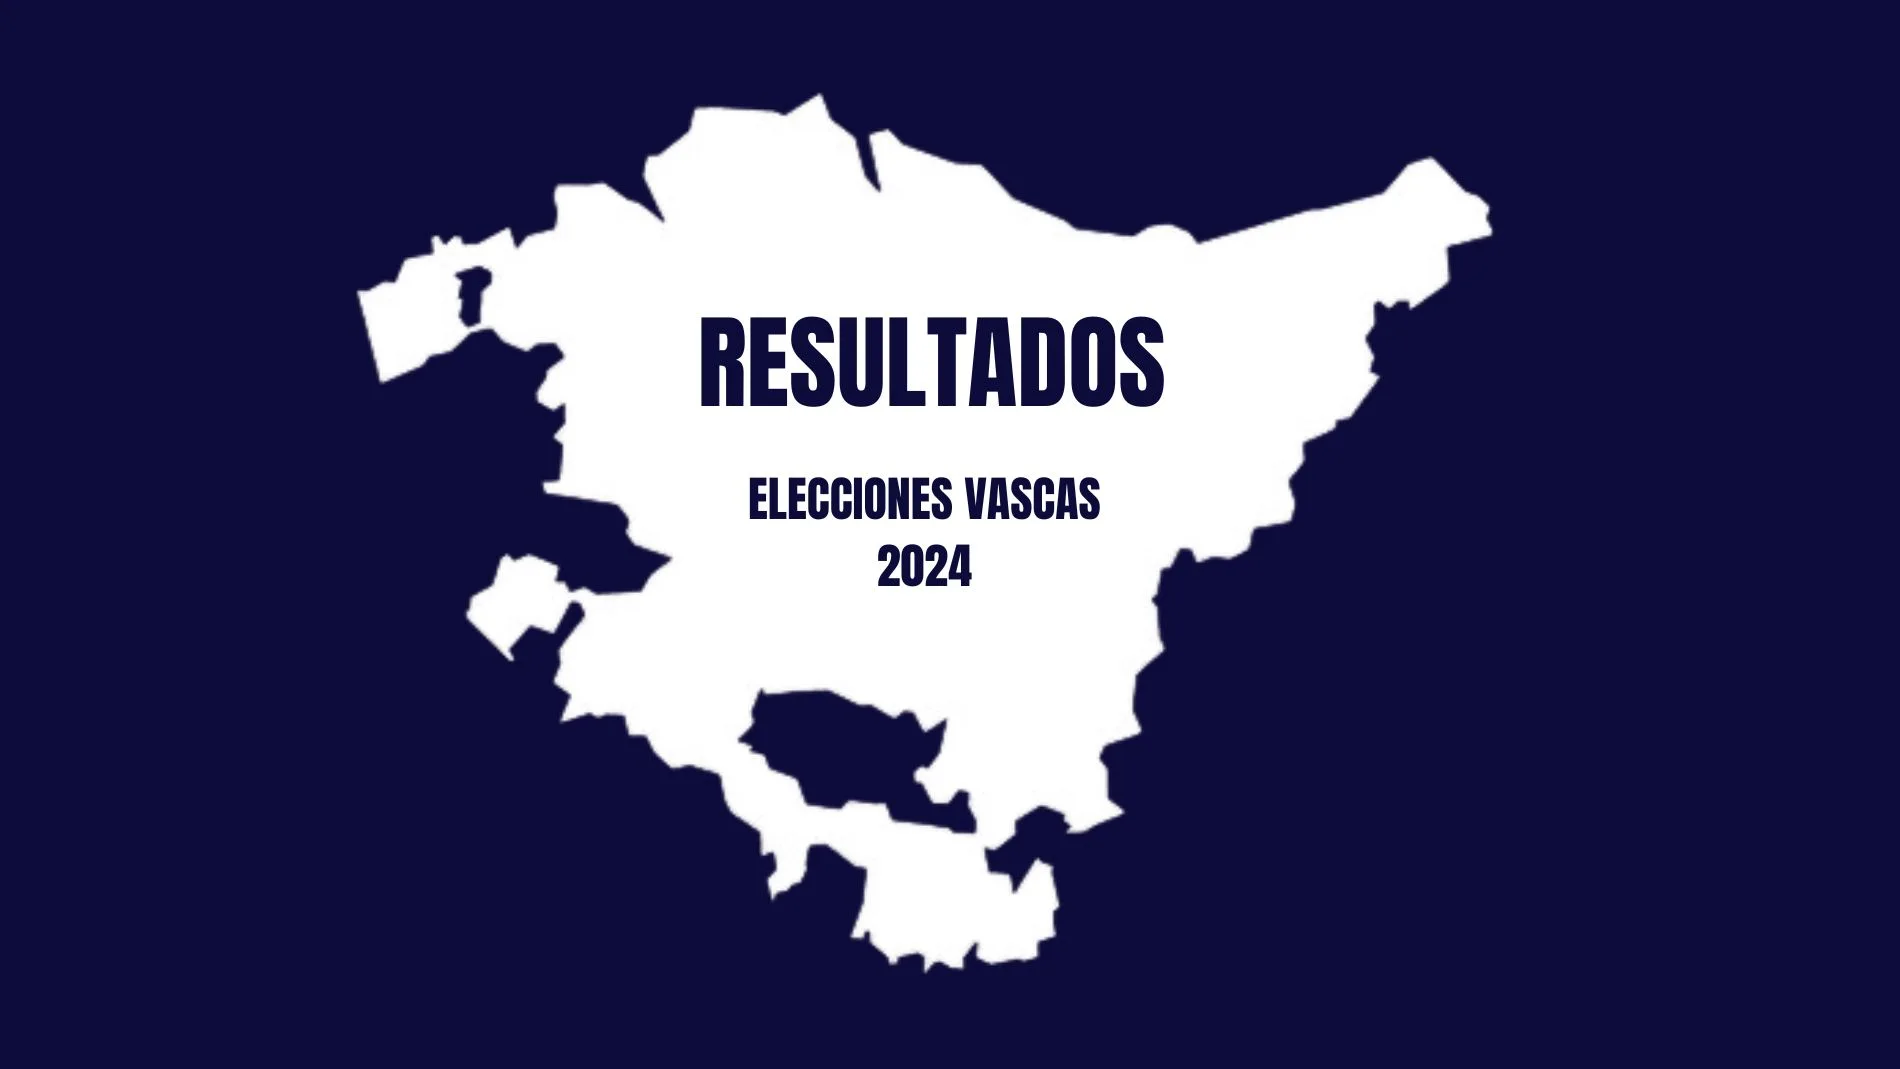 Resultados elecciones vascas 2024